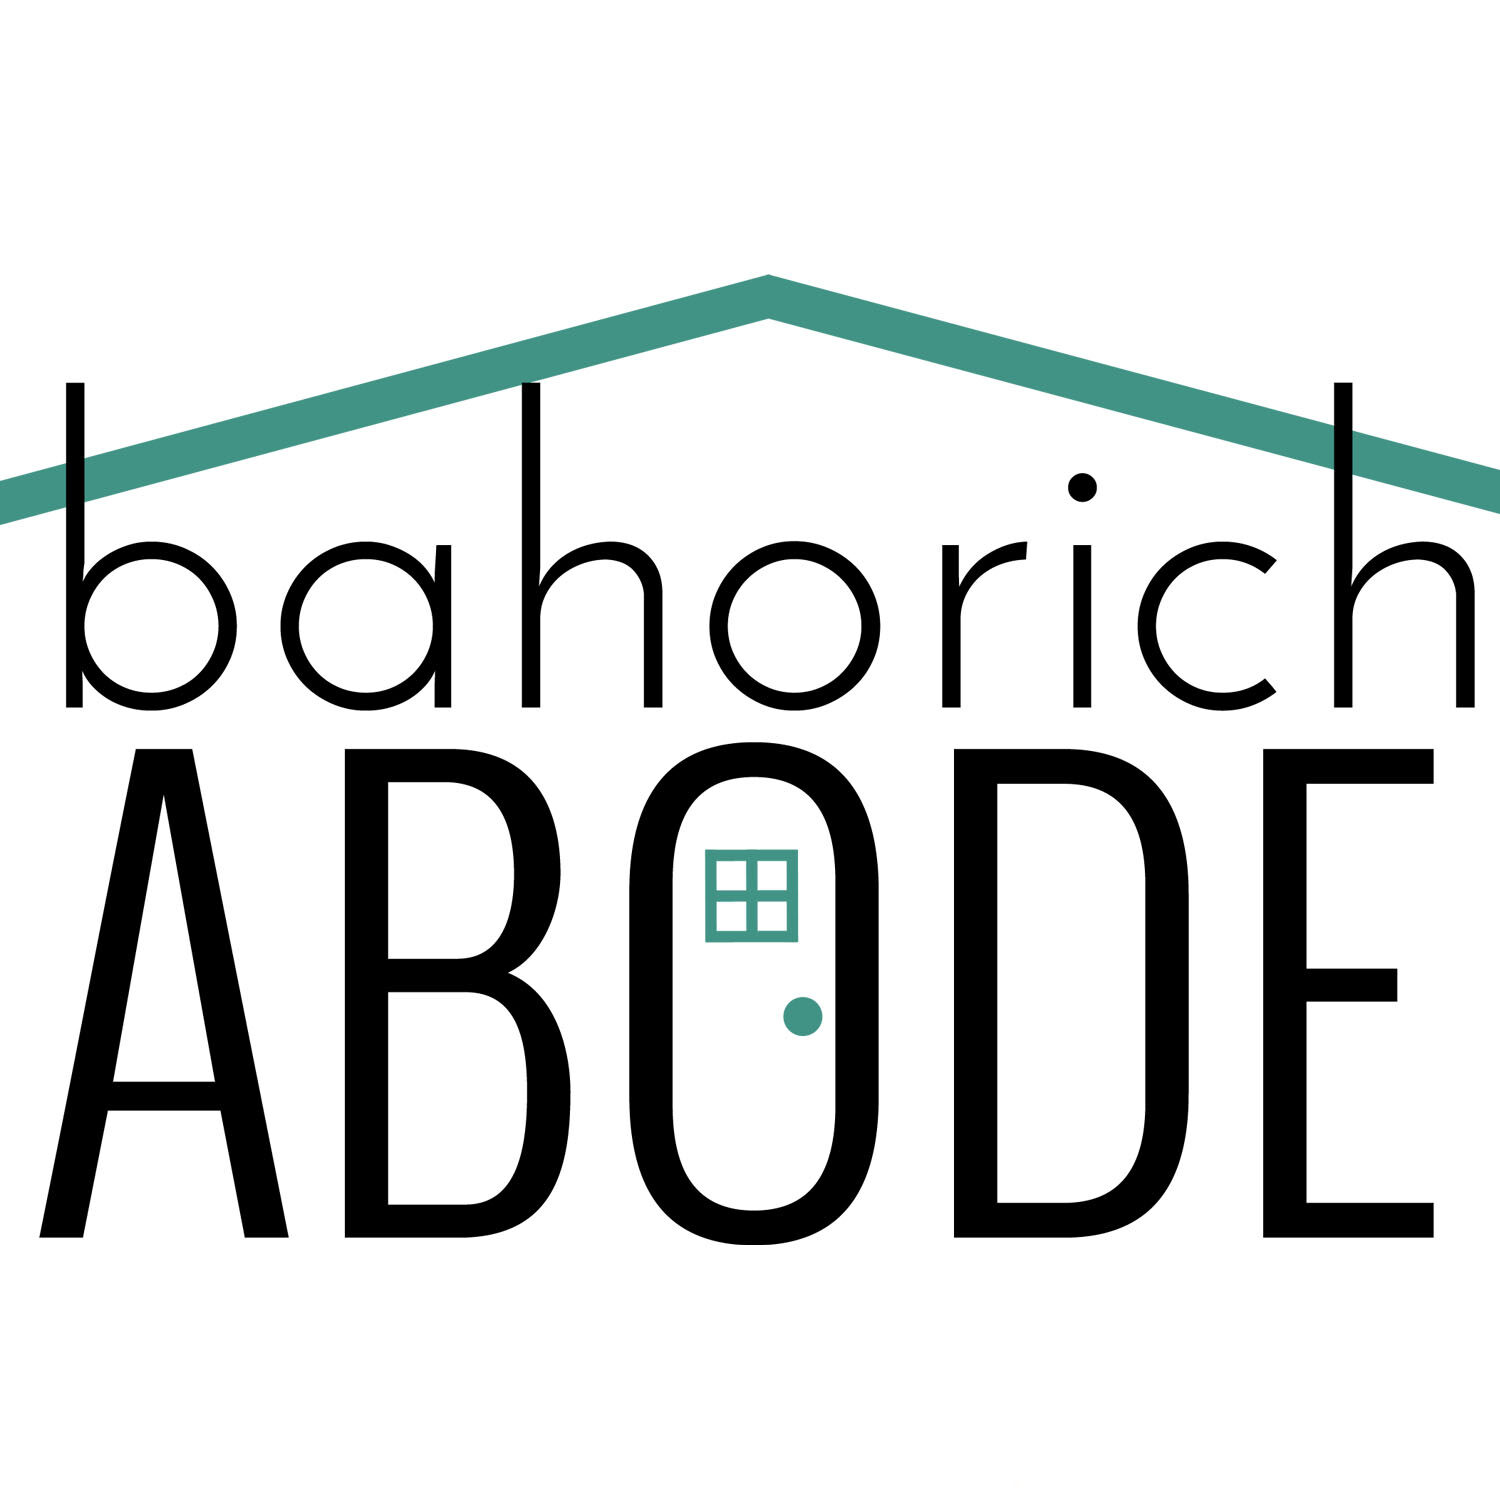 bahorich abode